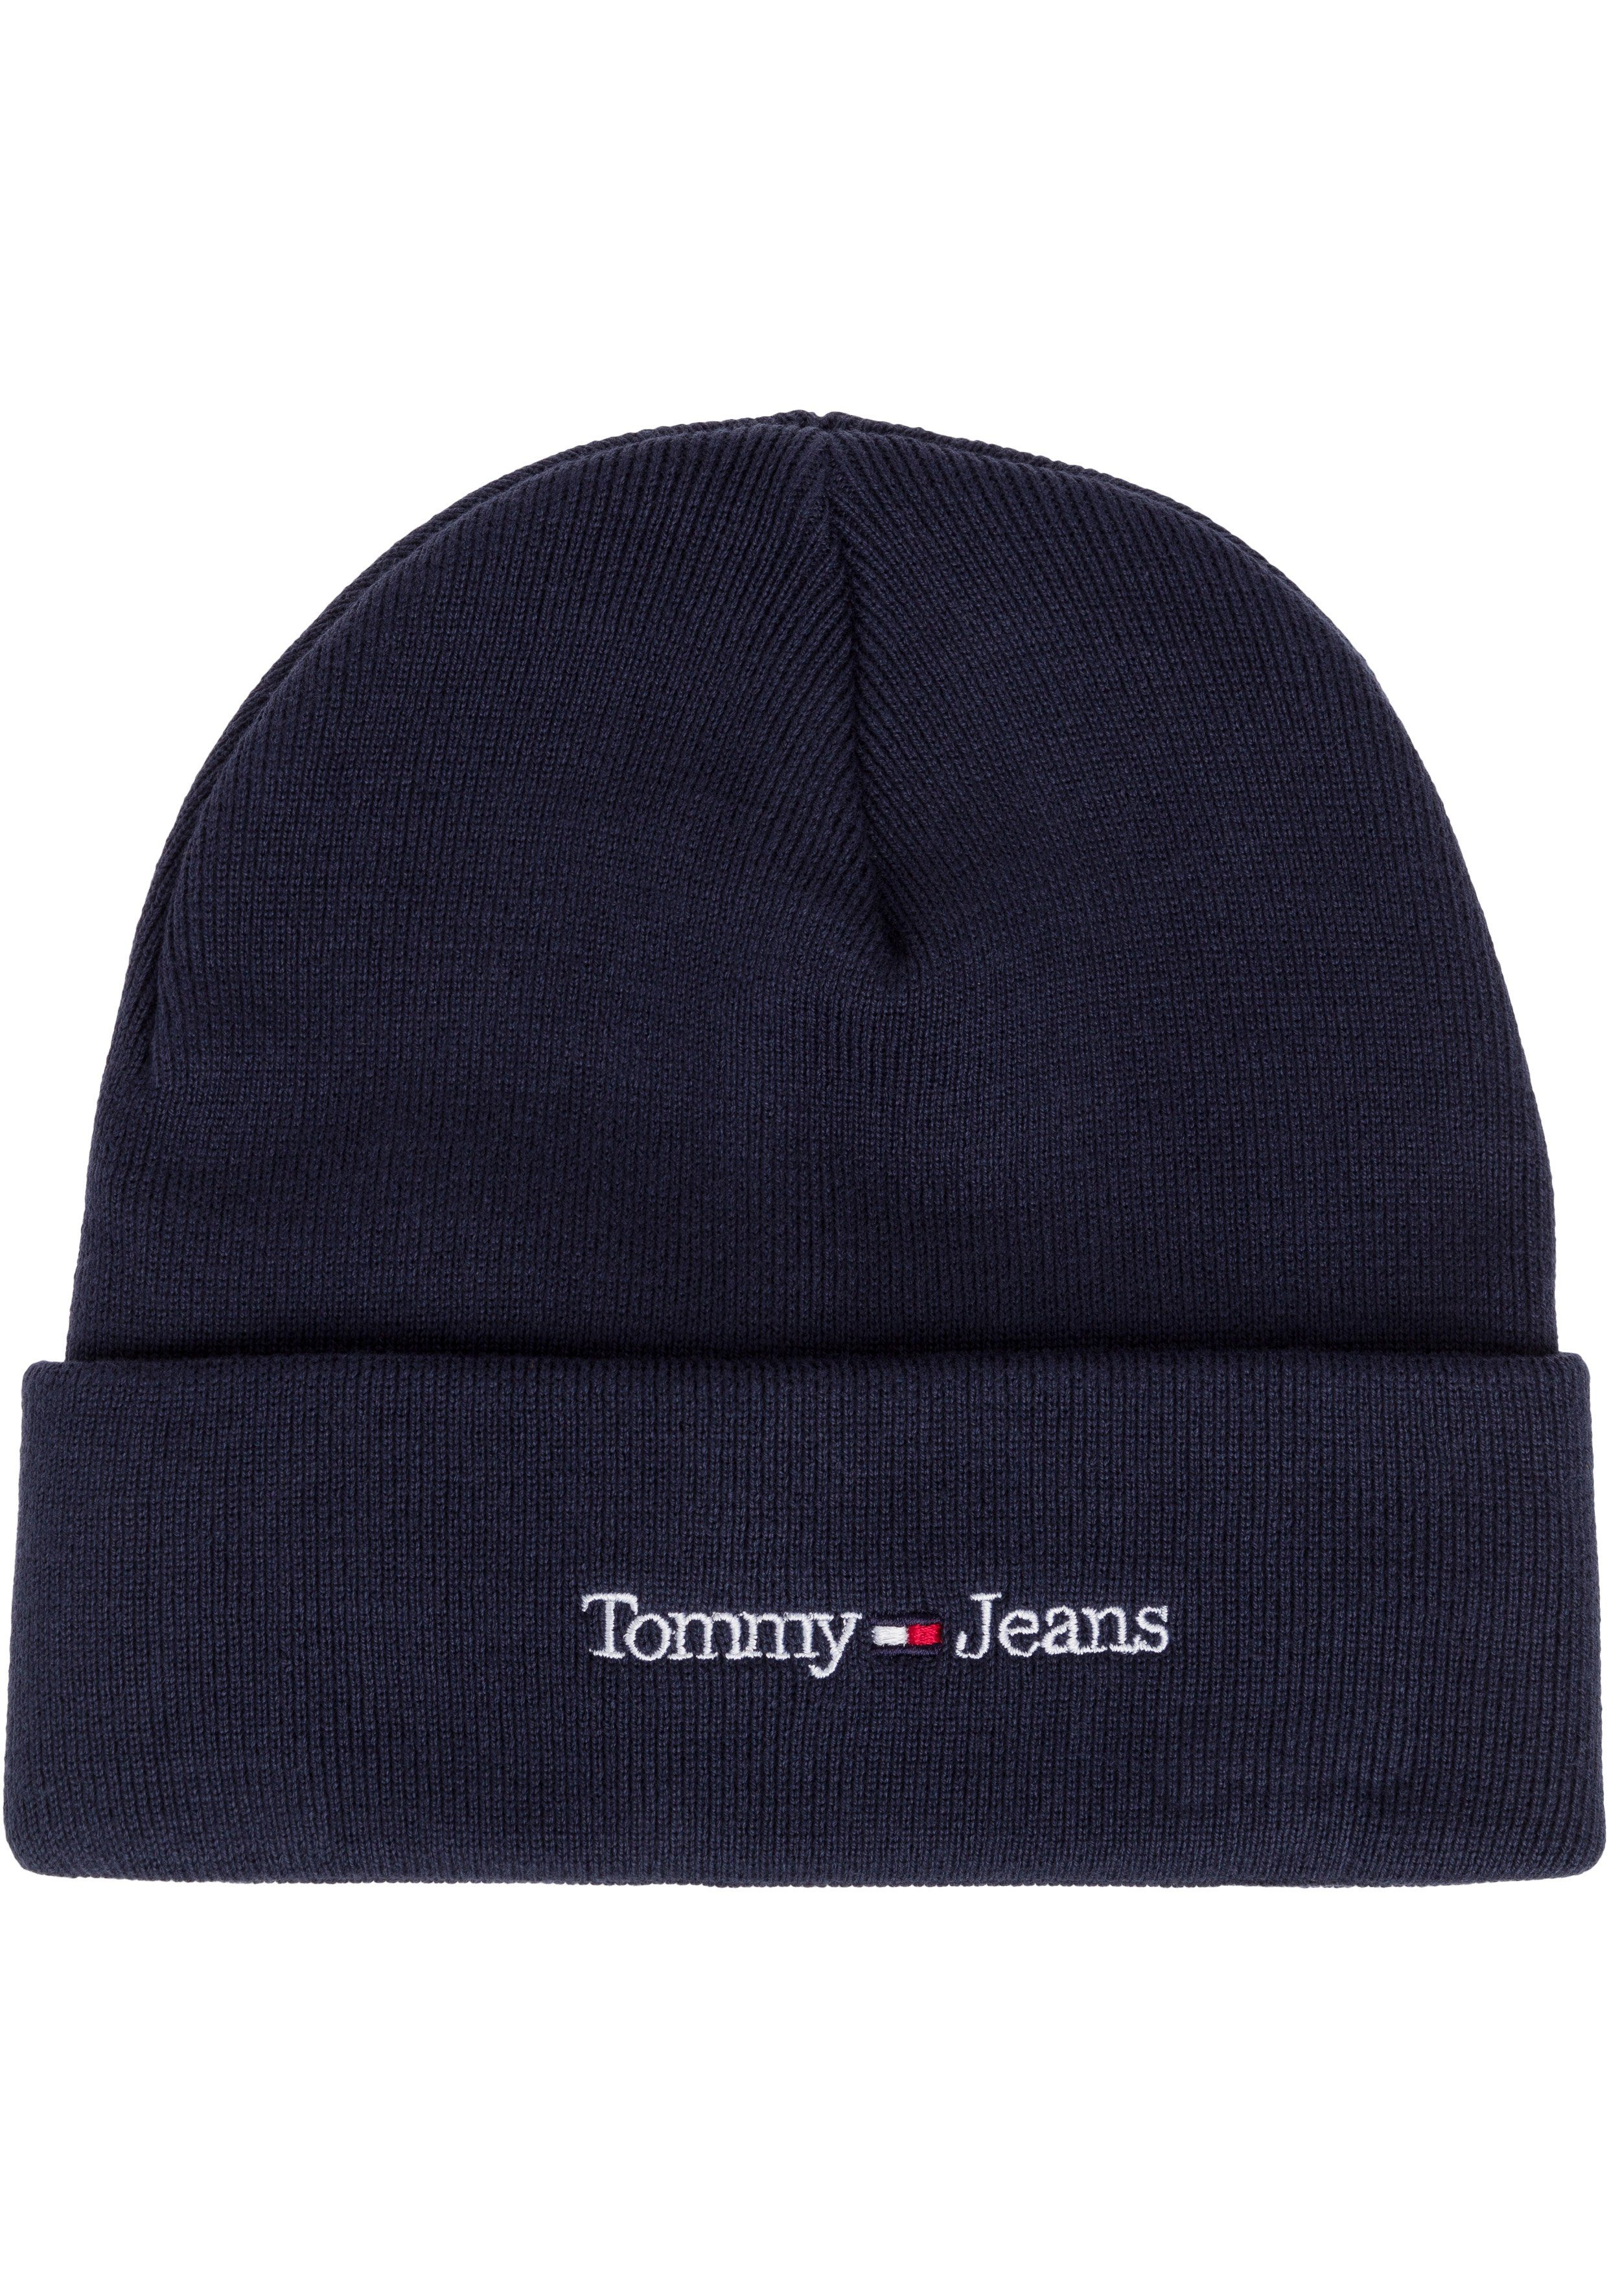 Tommy Jeans Beanie cooler navy Eigenschaften mit wärmenden Style